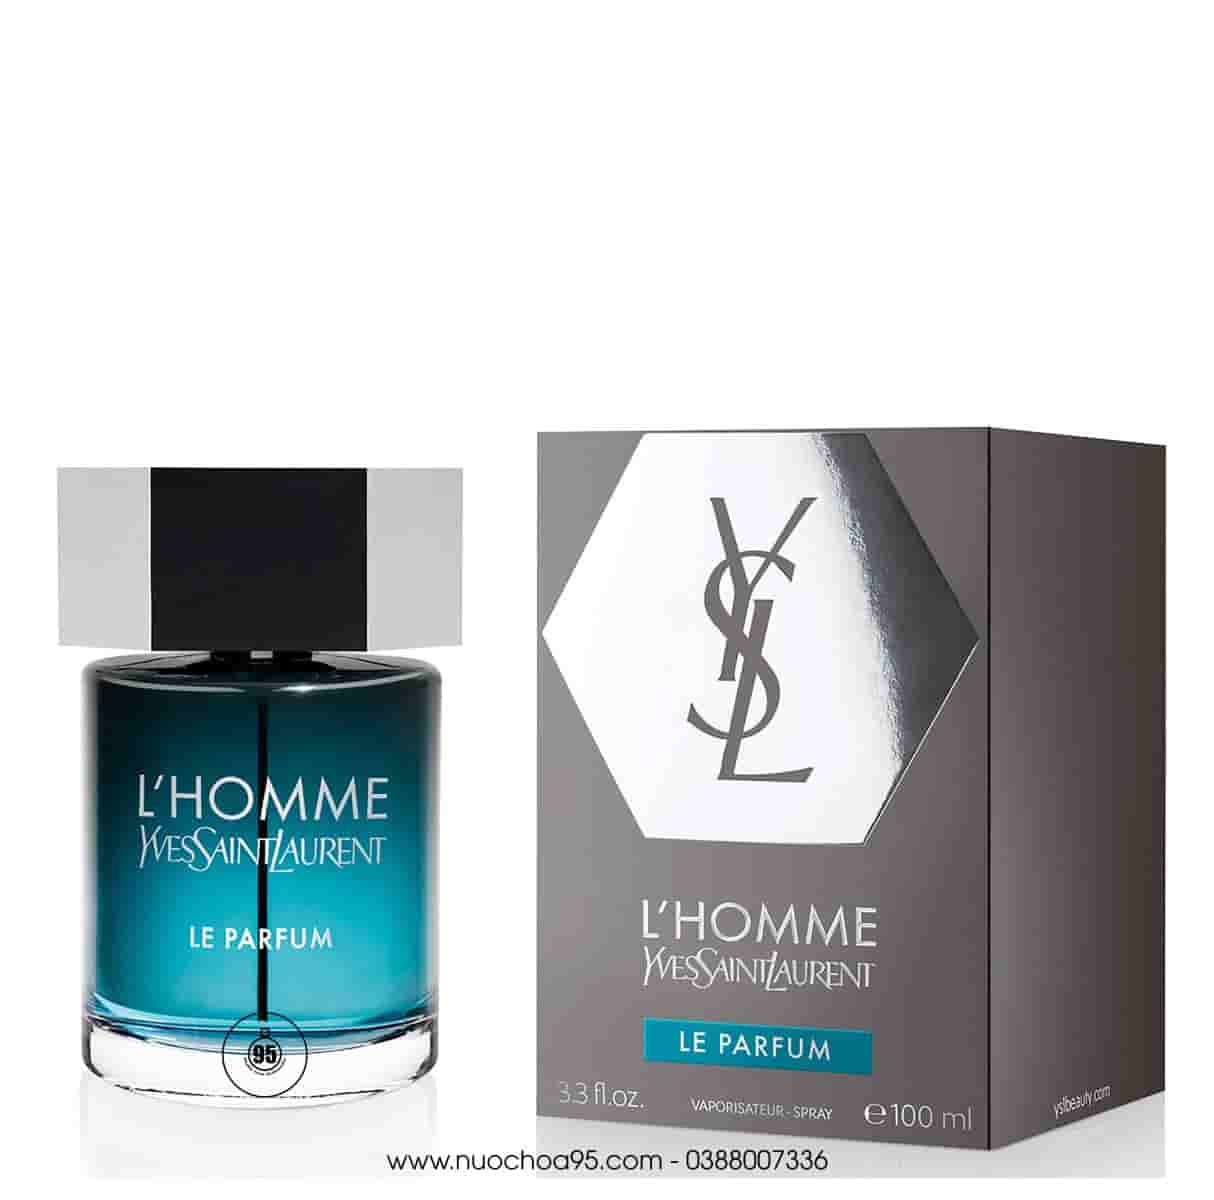 Nước hoa L'Homme Le Parfum Yves Saint Laurent